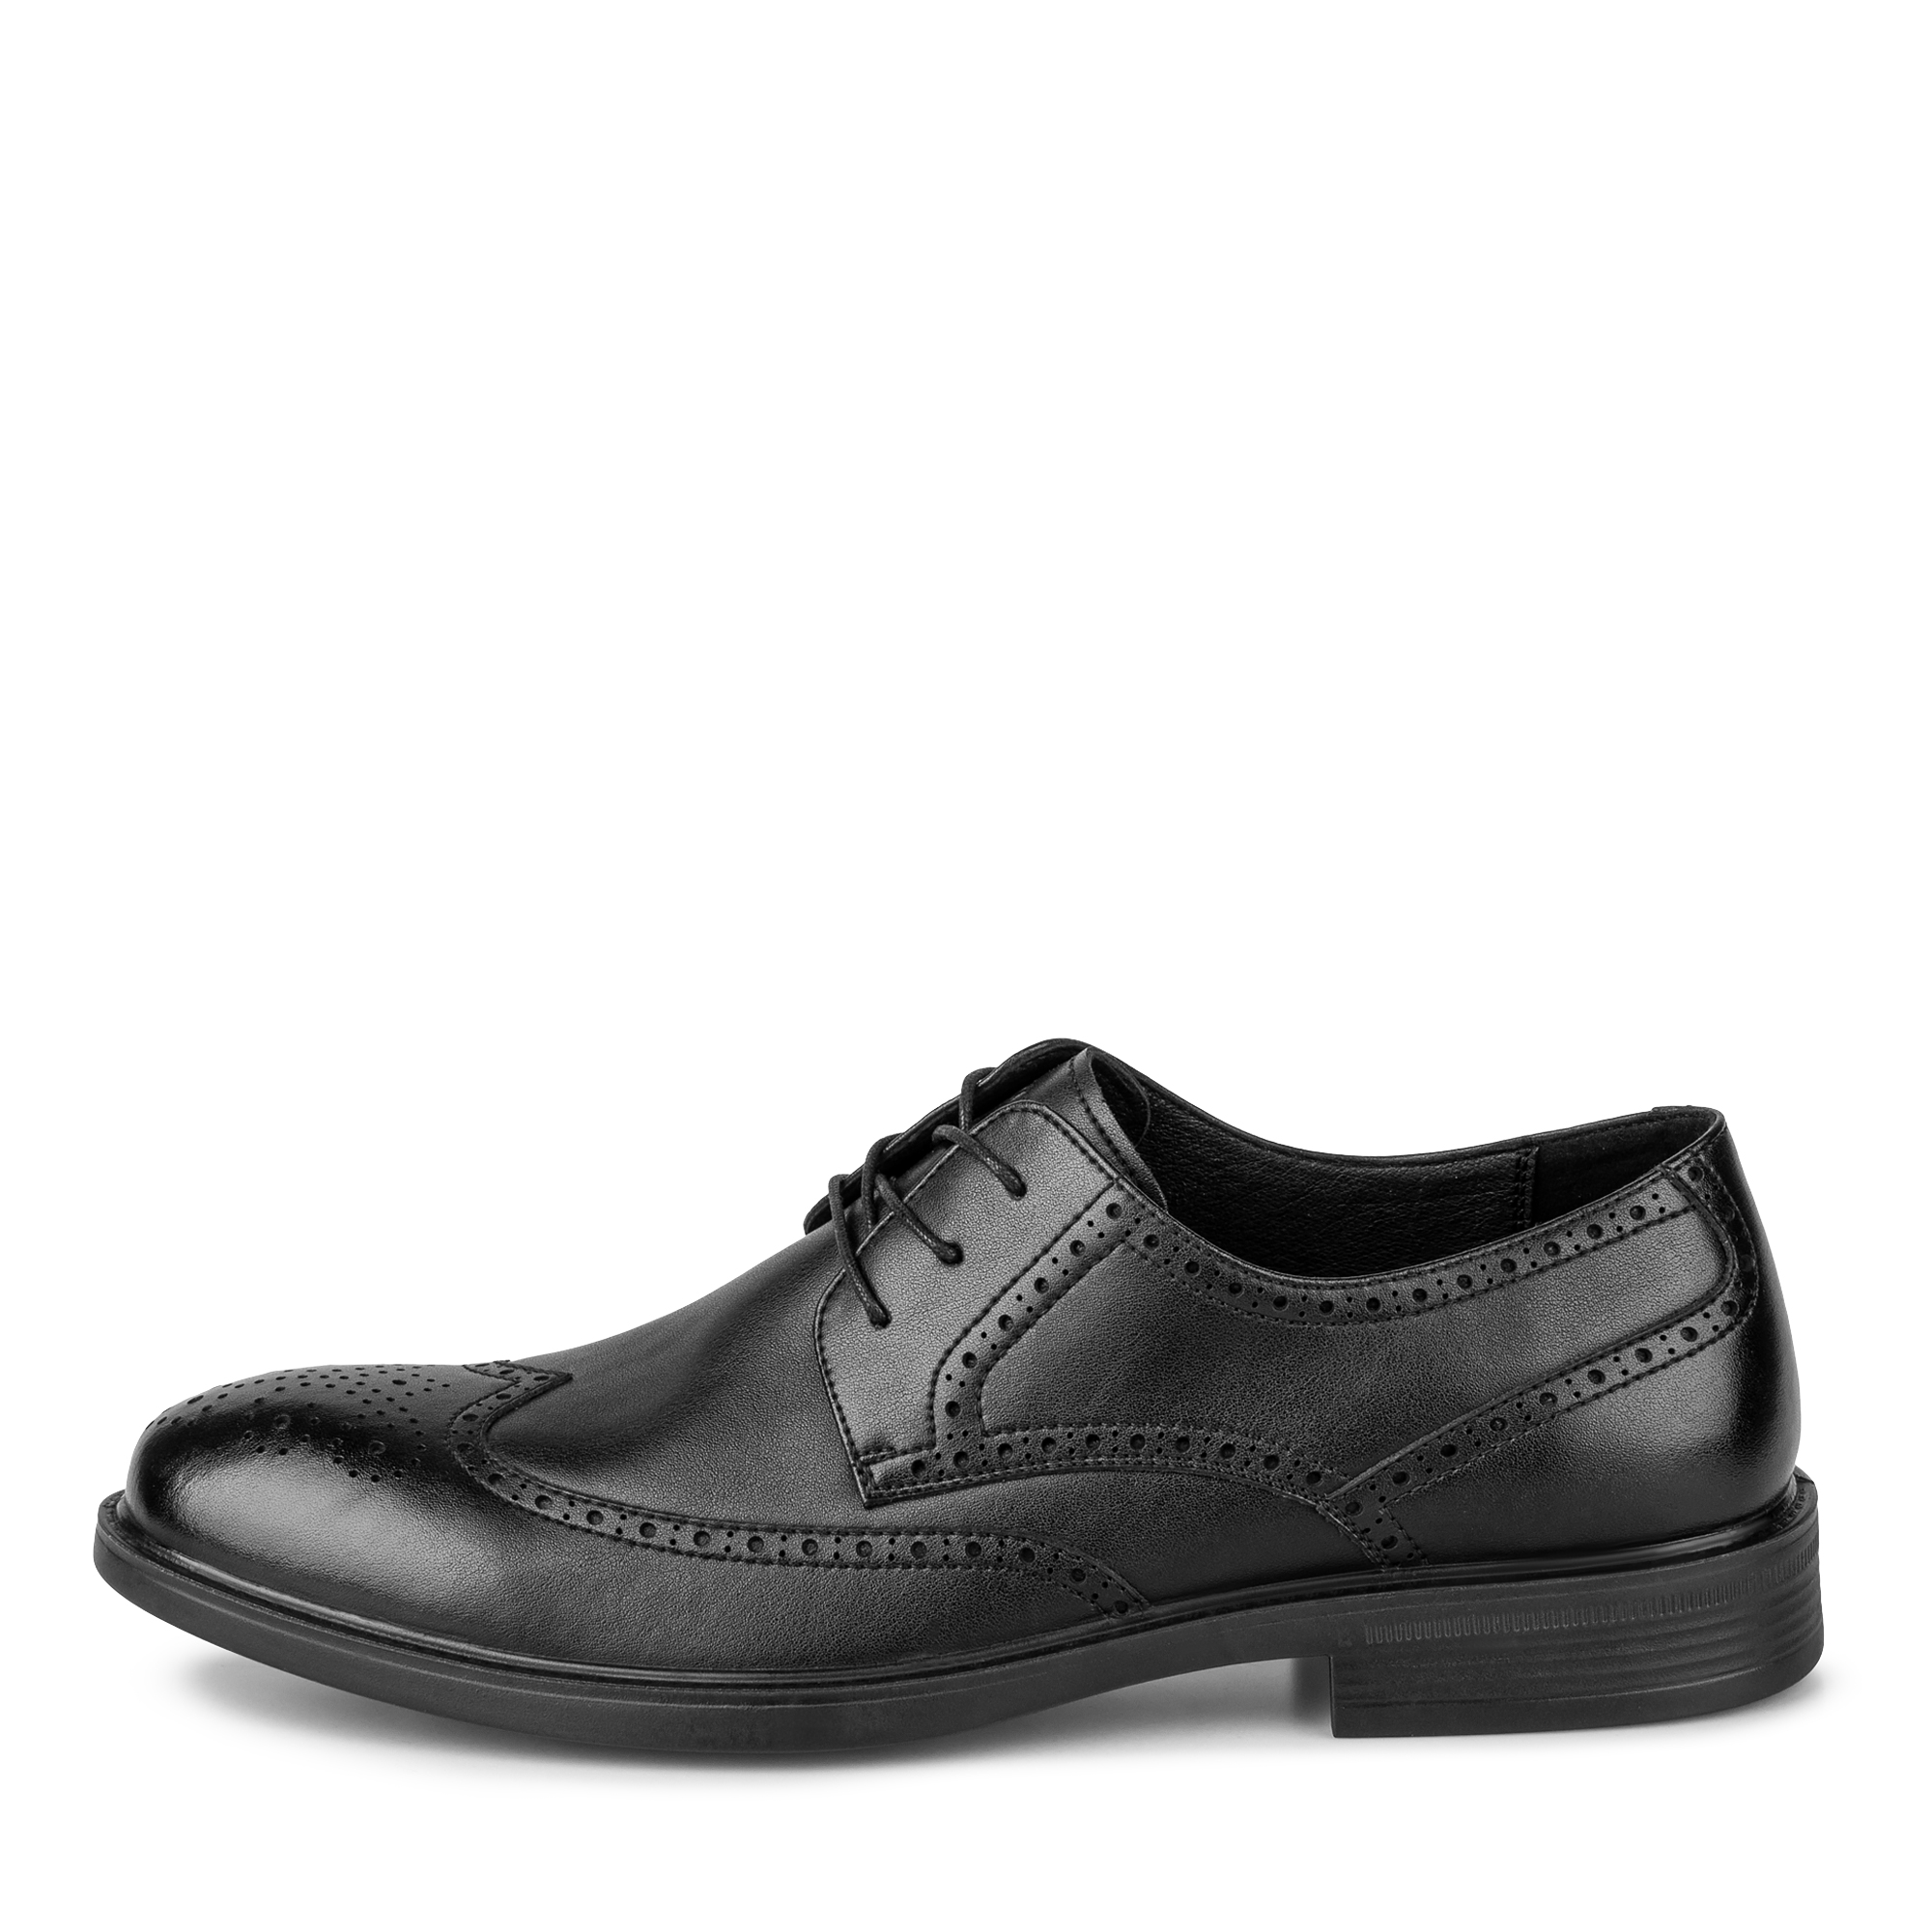 Туфли/полуботинки Thomas Munz 104-614B-1602, цвет черный, размер 43